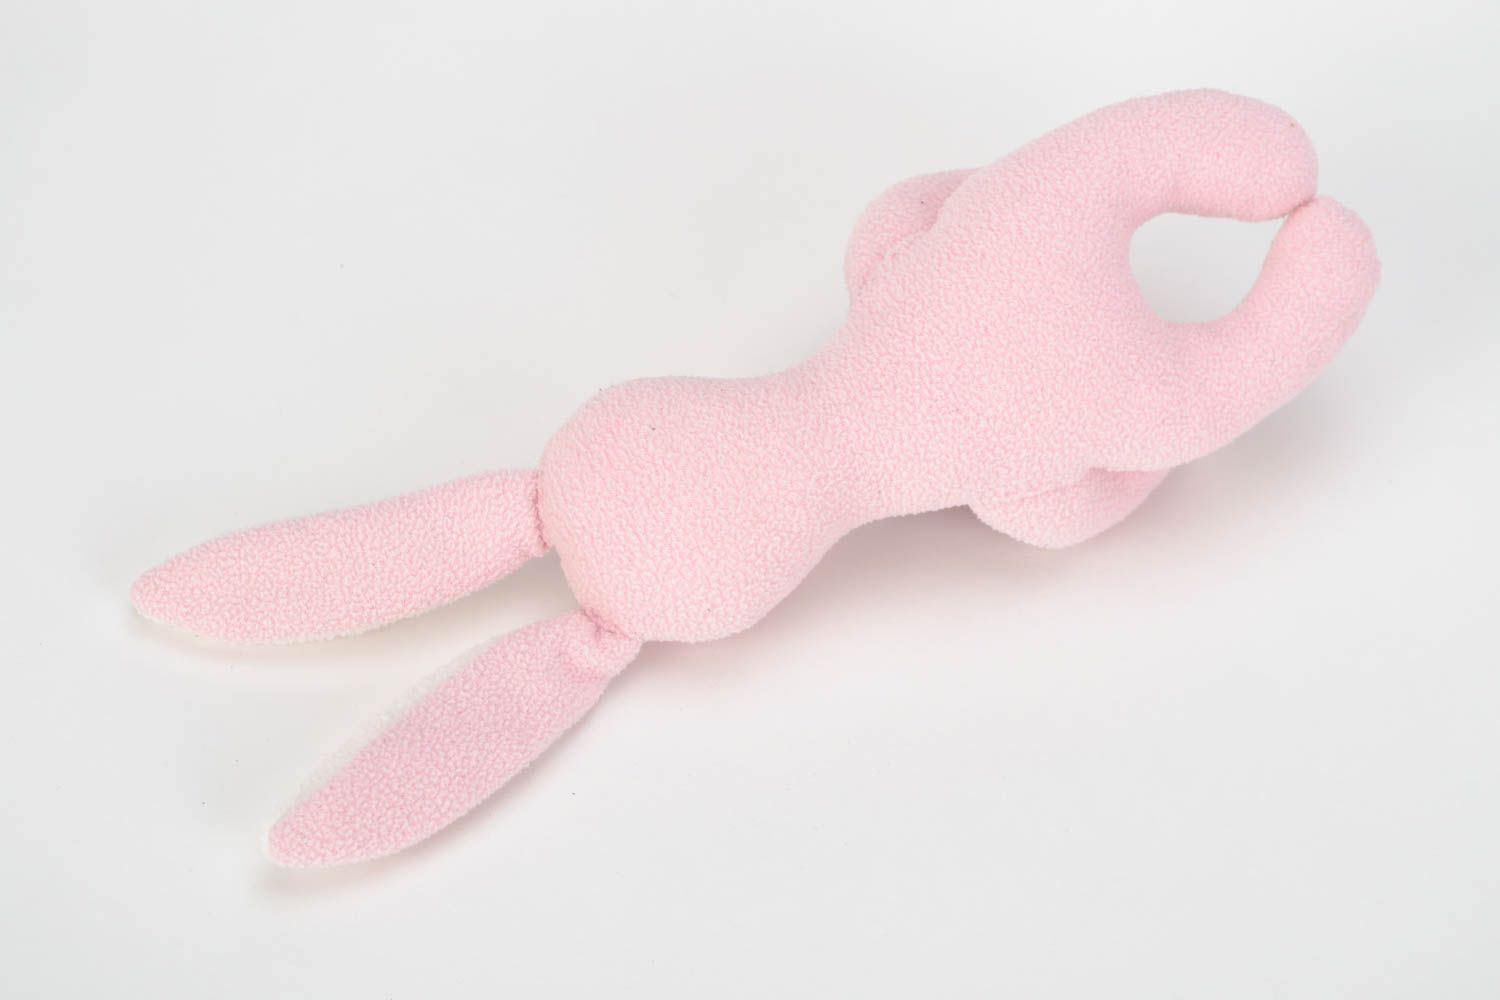 Textil Osterhase mit Osterei Spielzeug zu Ostern in Rosa schön Handarbeit  foto 5